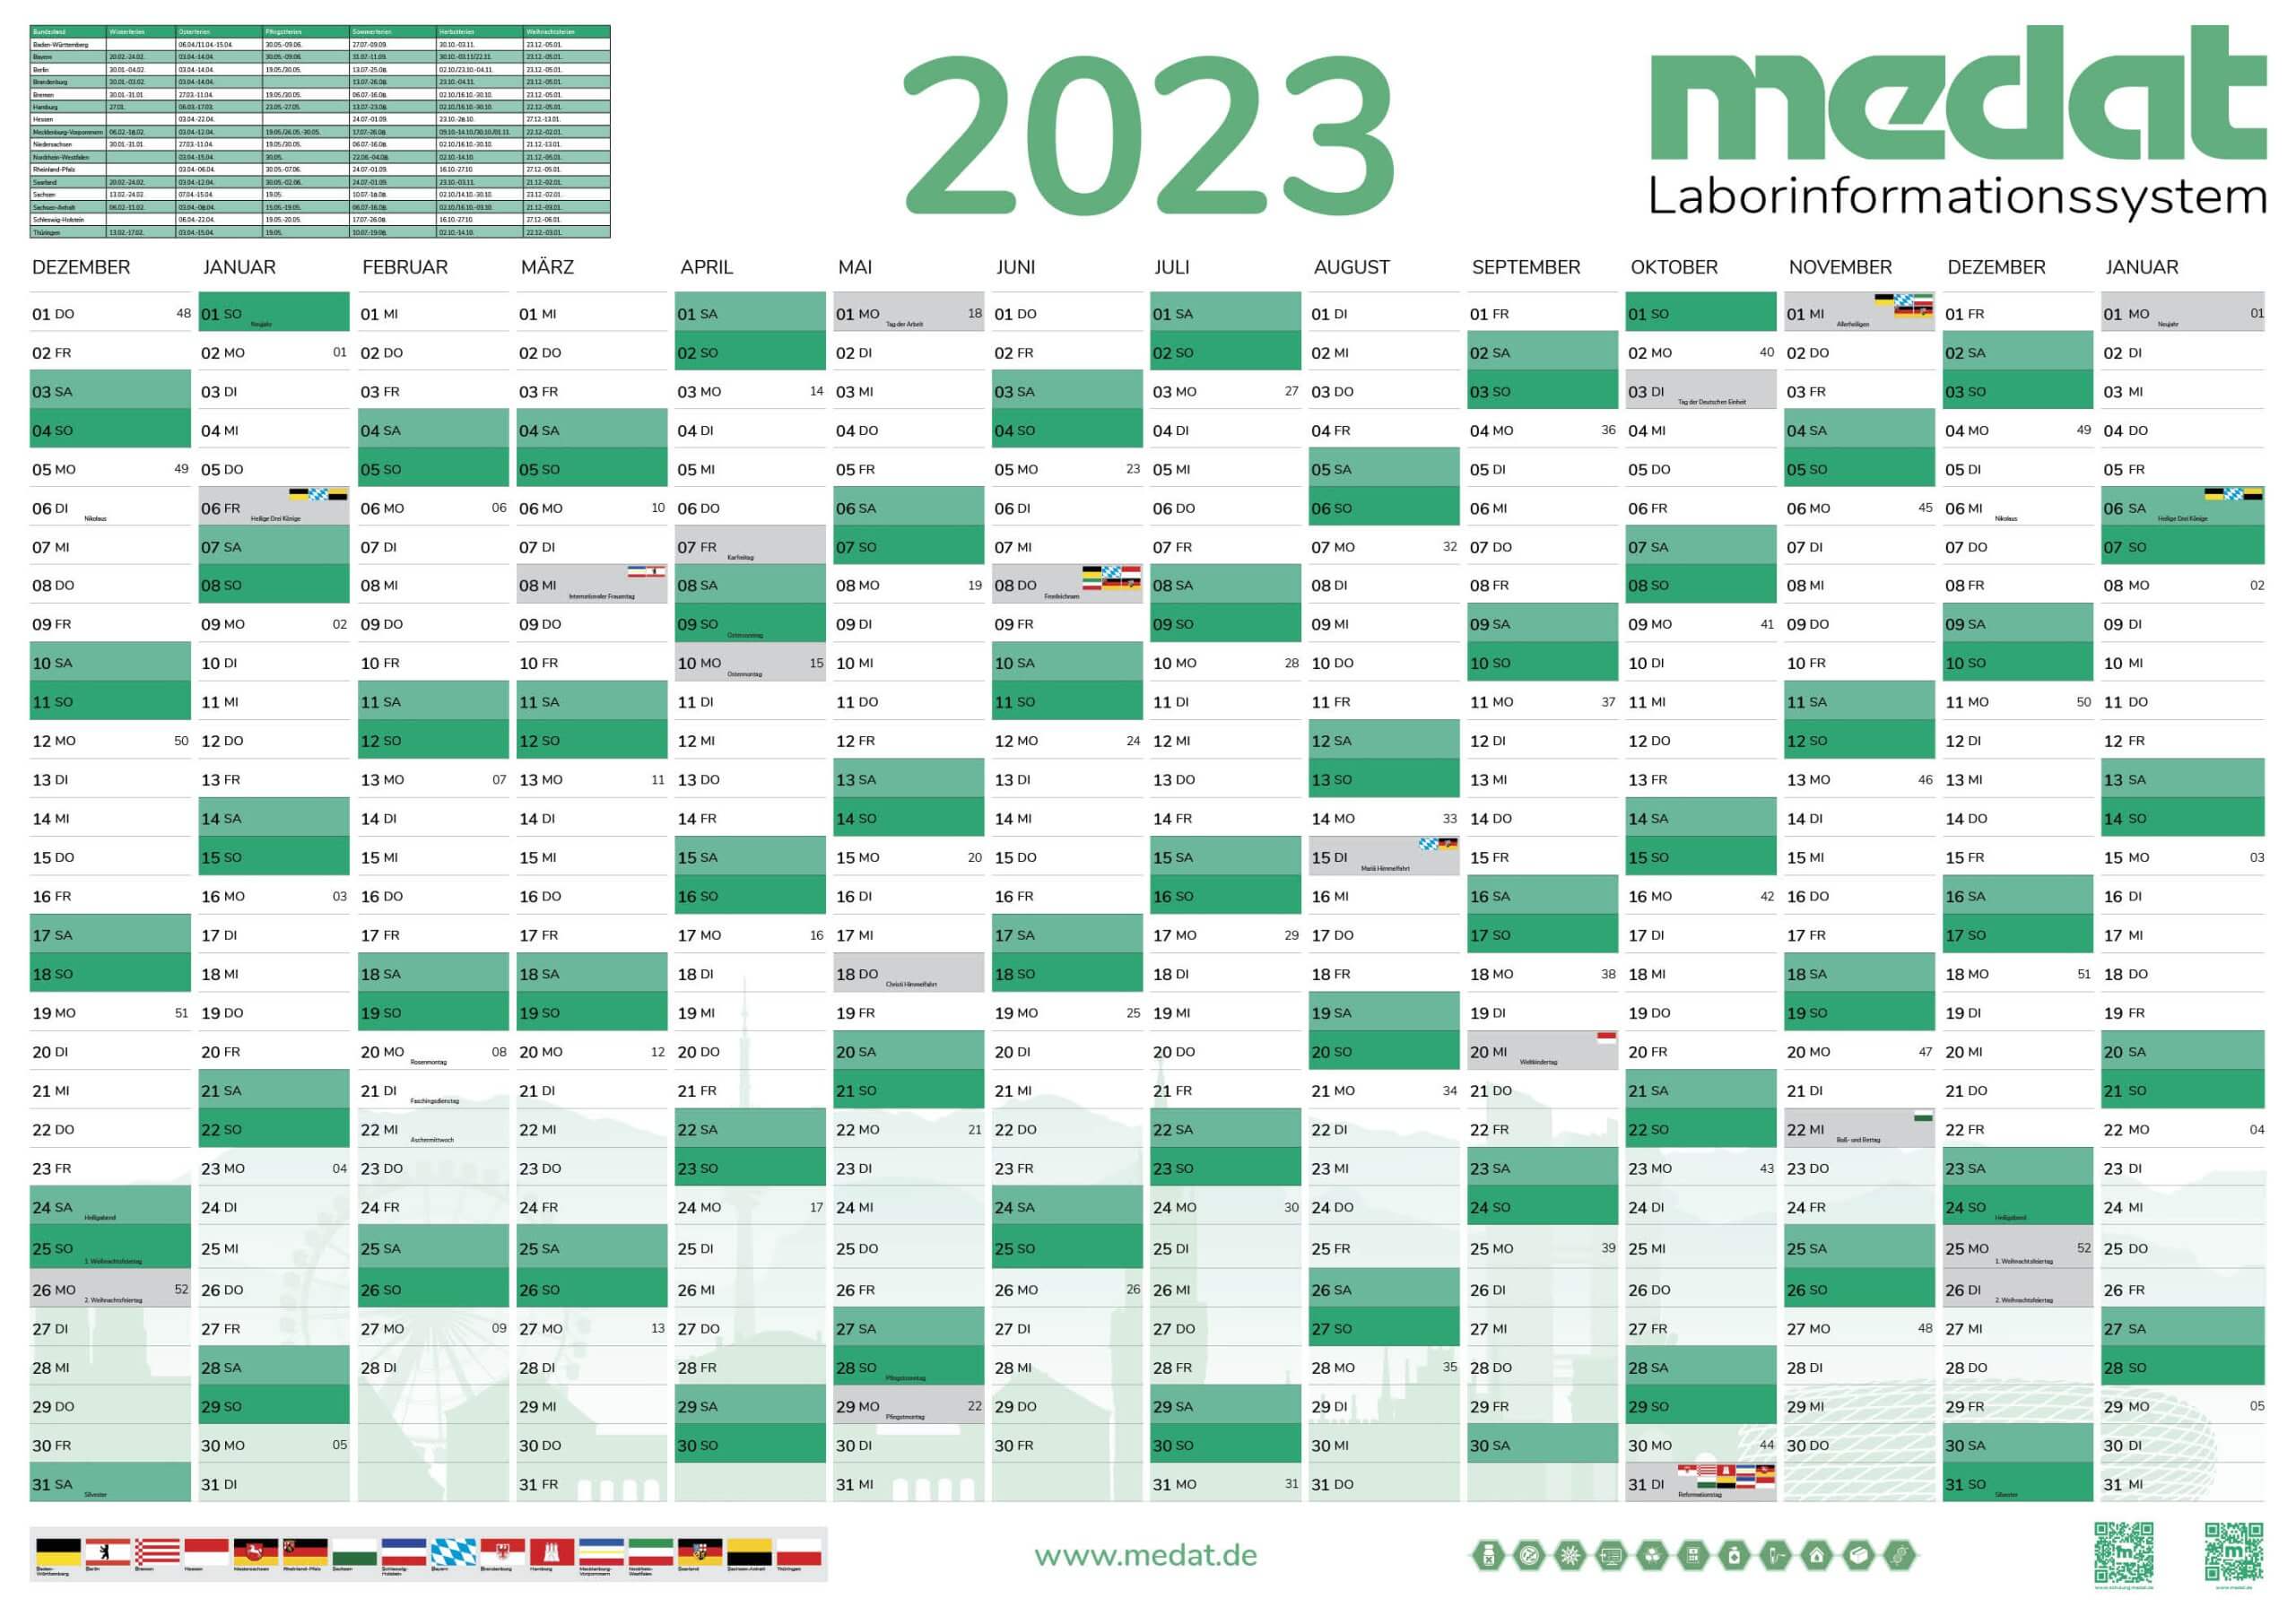 Die Vorderseite des Medat- Wandkalender 2023, die Feiertage und Wochenenden sind in drei verschiedenen Grüntönen gefärbt. Im Kopf des Wandkalender befindet sich das Jahr, eine Tabelle mit den Ferien und die Wortmarke von "Medat Laborinformationssystem".